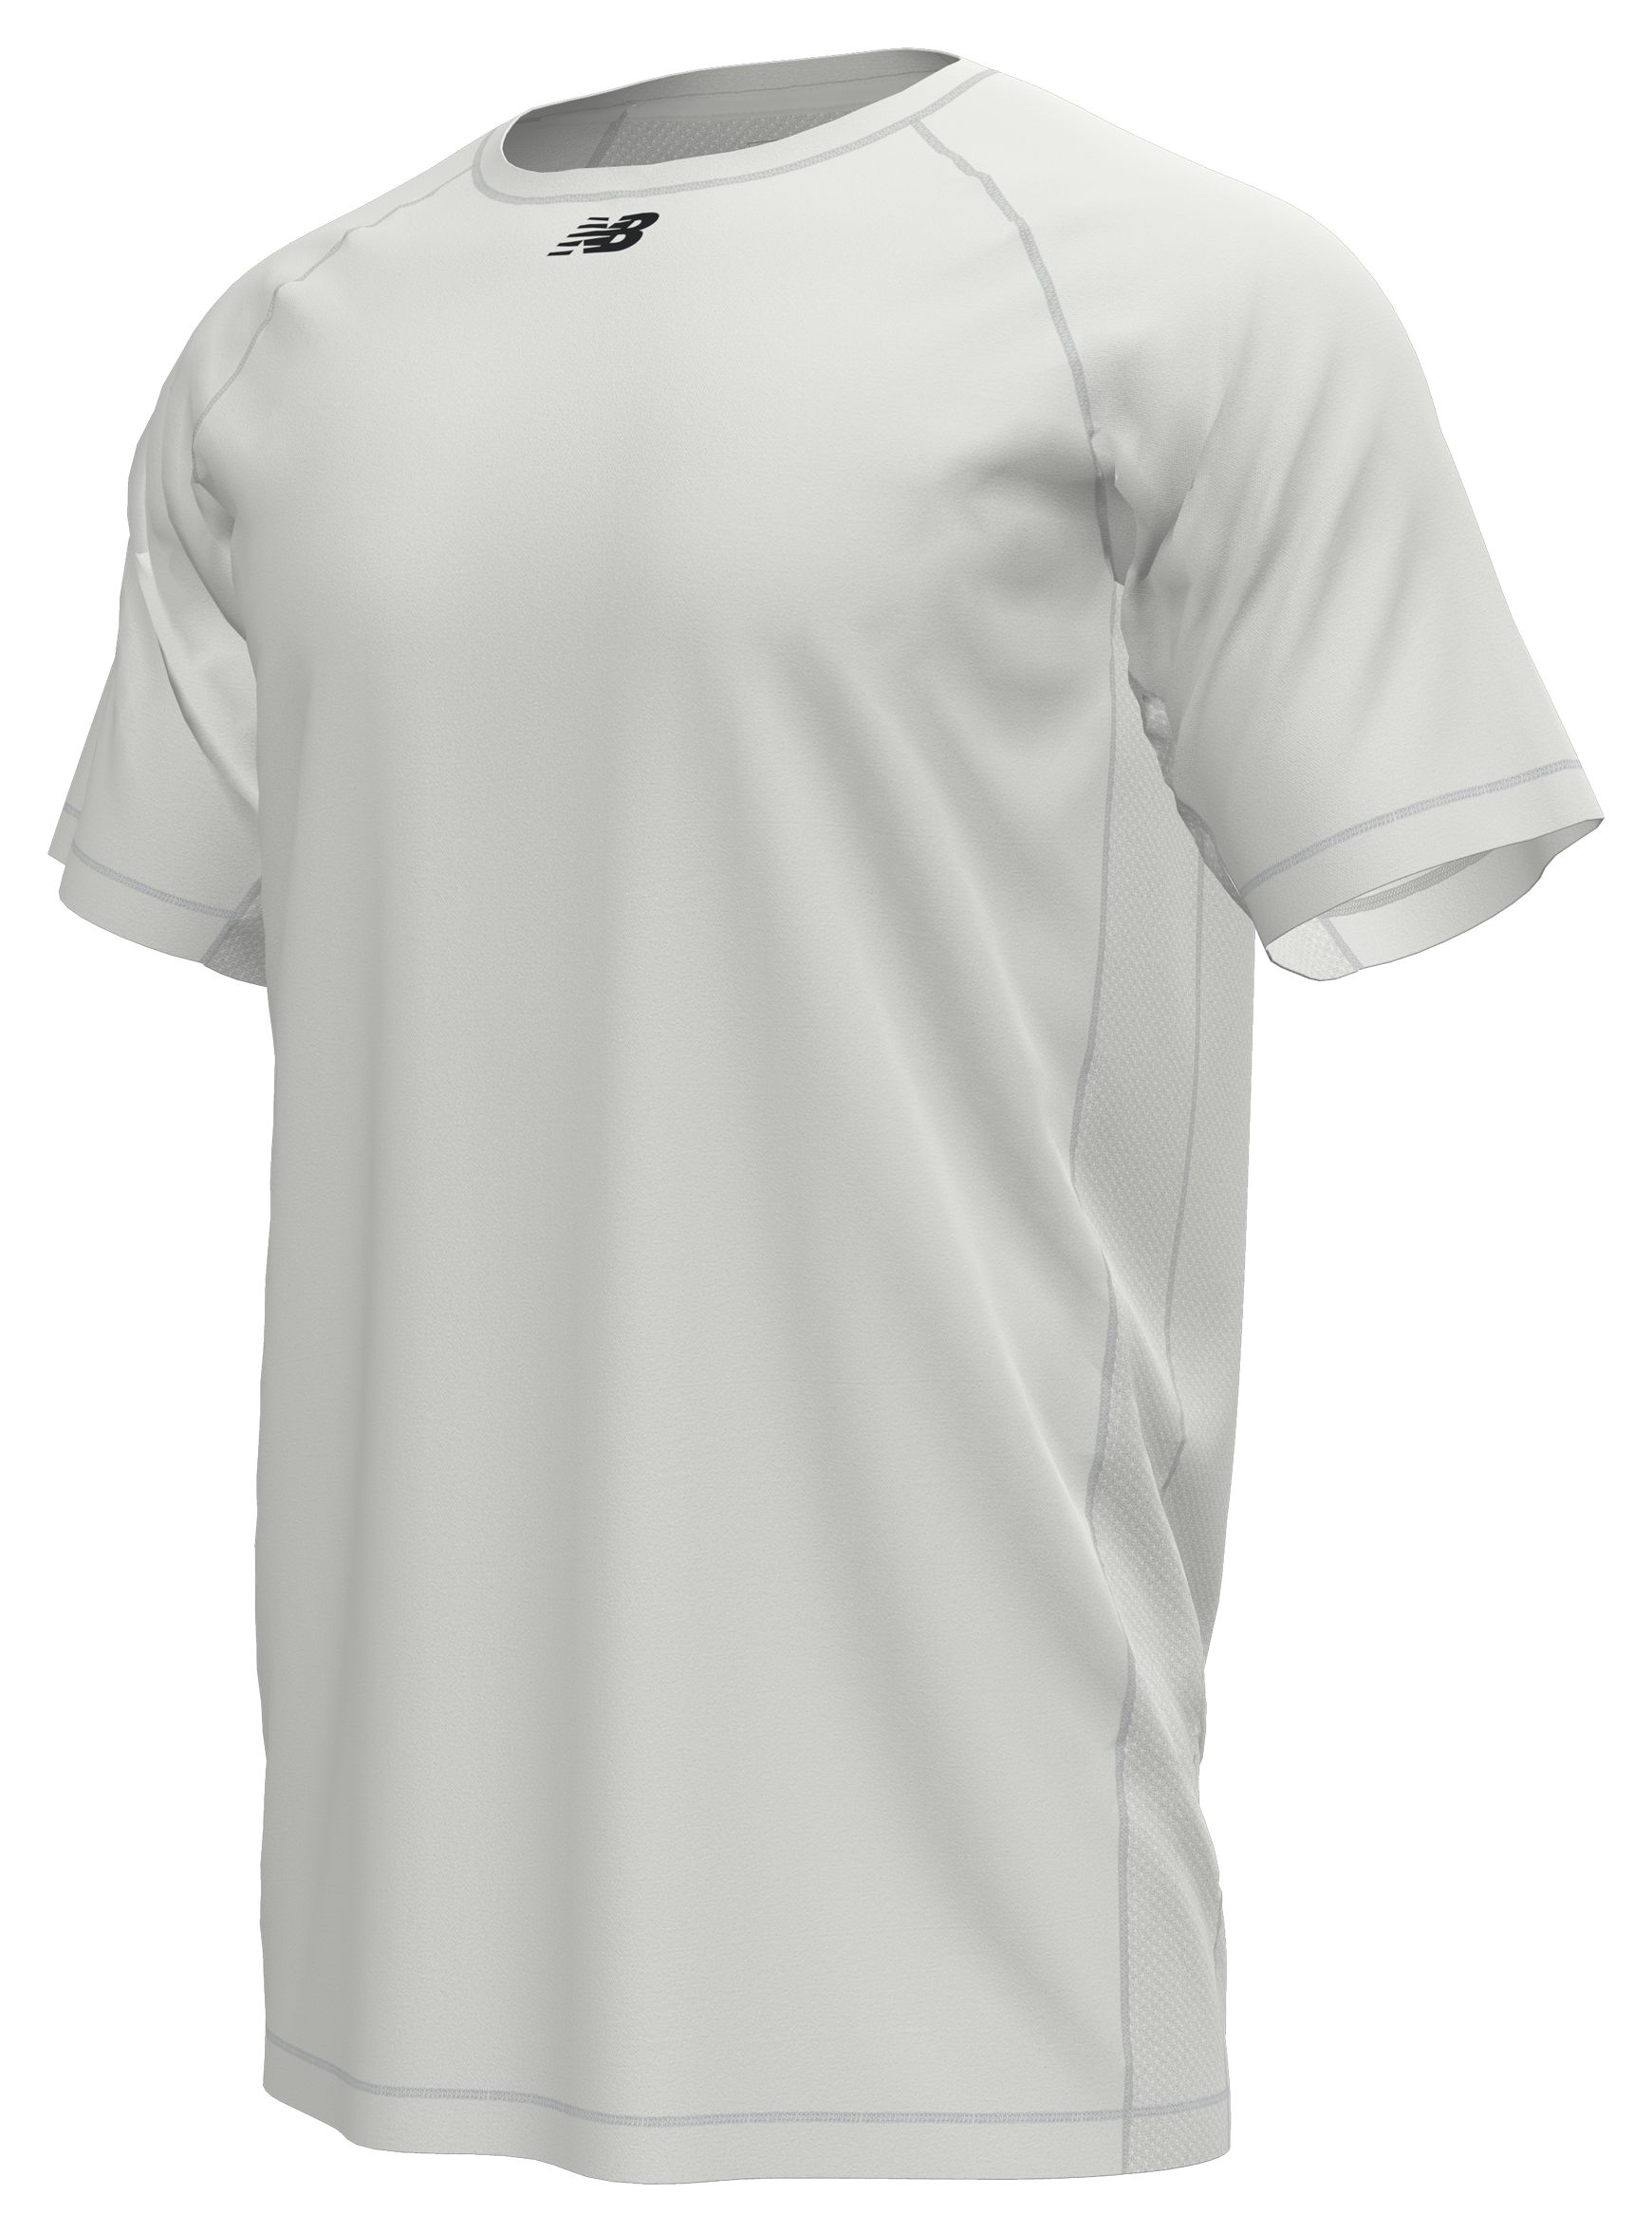 Top Pro Men & Women Short Sleeve Baseball Raglan Tee Shirt Top, Adult Unisex, Size: 2XL, Blue